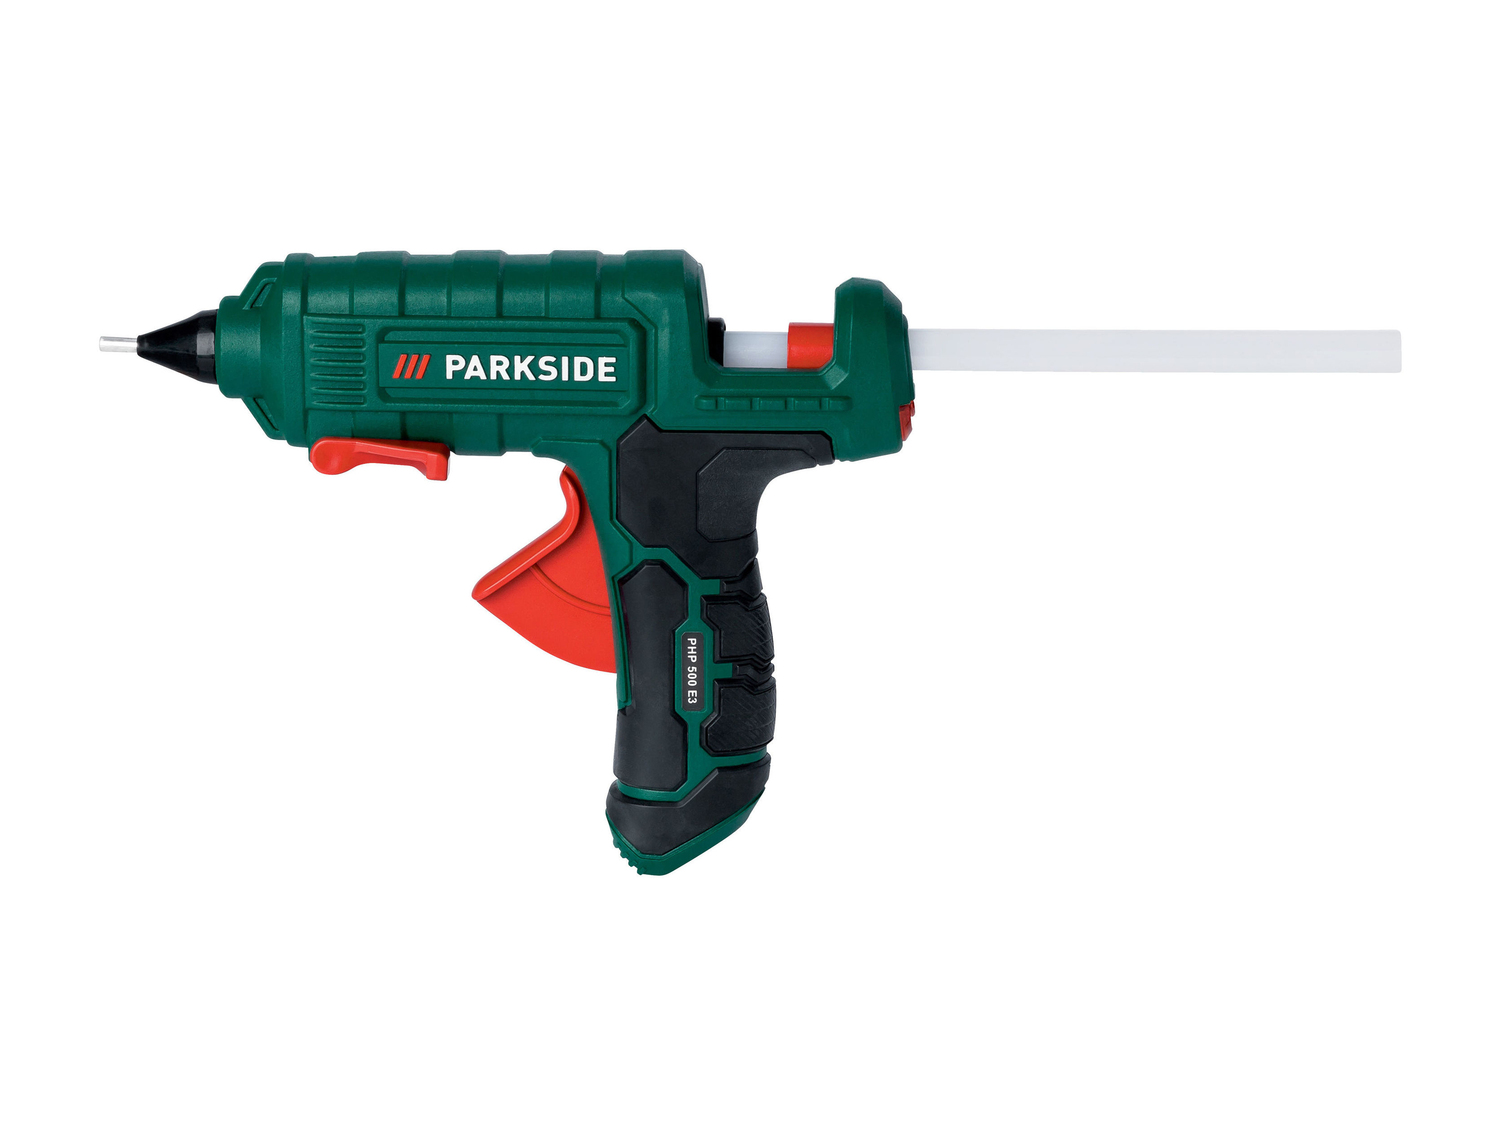 Pistola per colla a caldo Parkside, prezzo 9.99 € 
- Utilizzo con o senza cavo
- ...